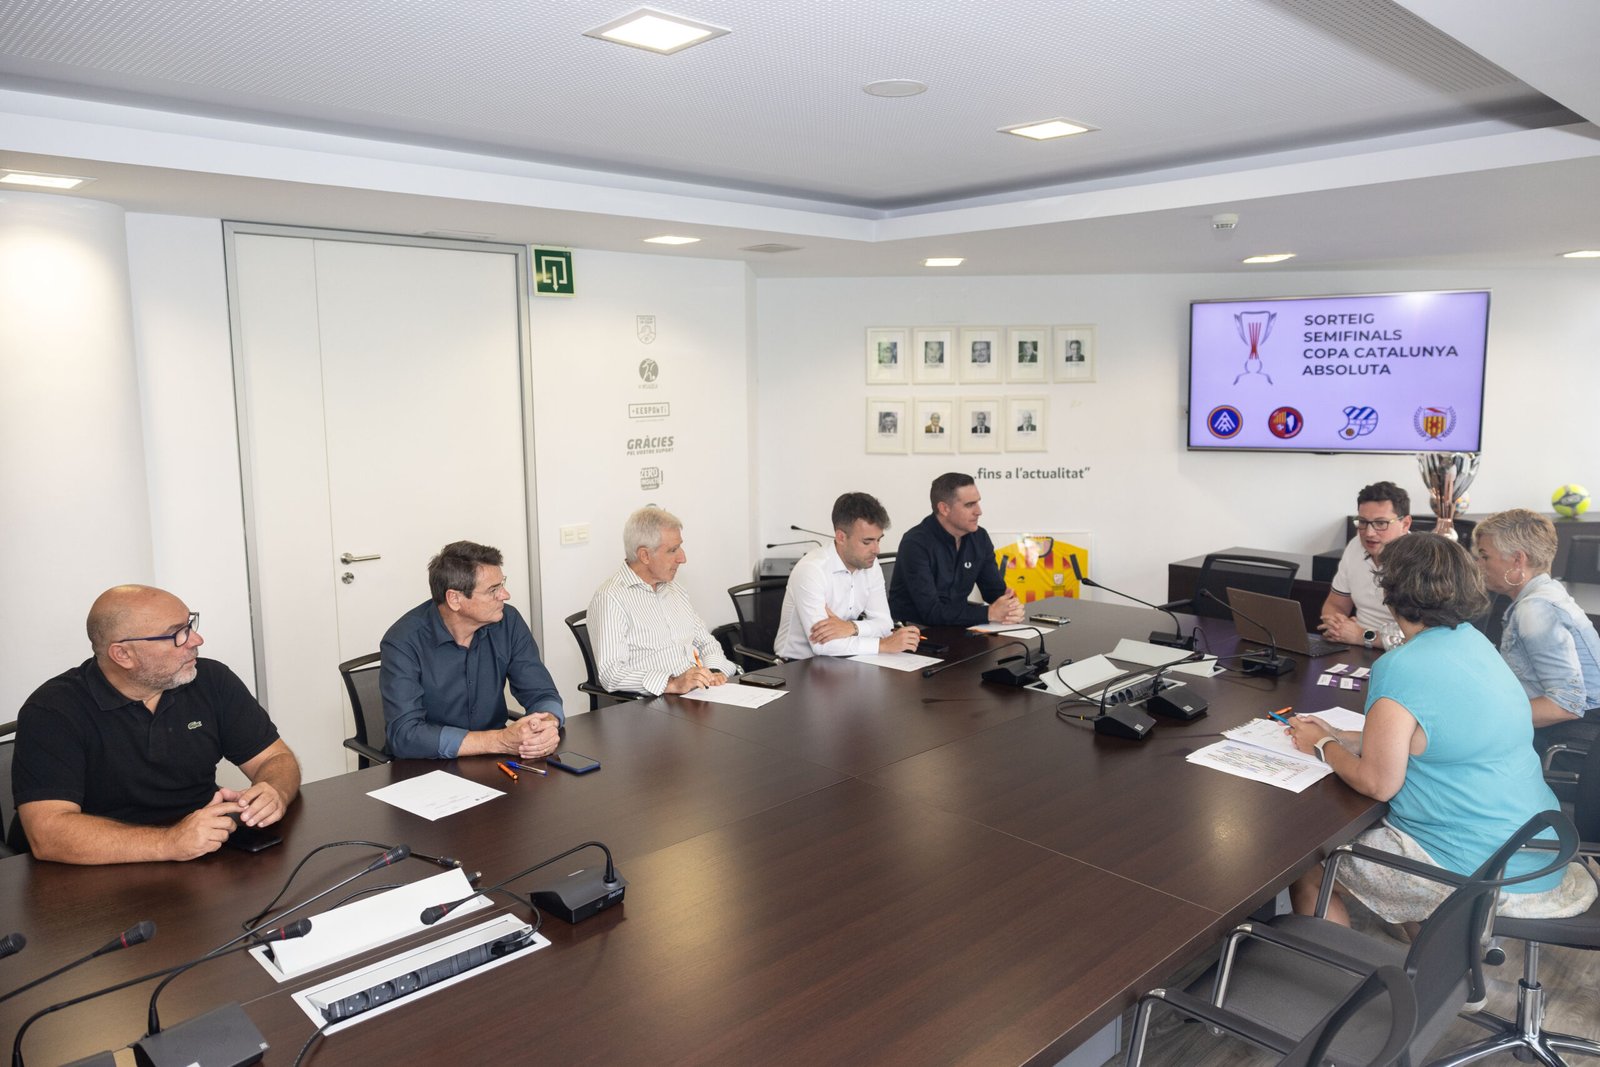 Un instant de la reunió entre els representants dels equips participants a la Copa Catalunya. / FCF